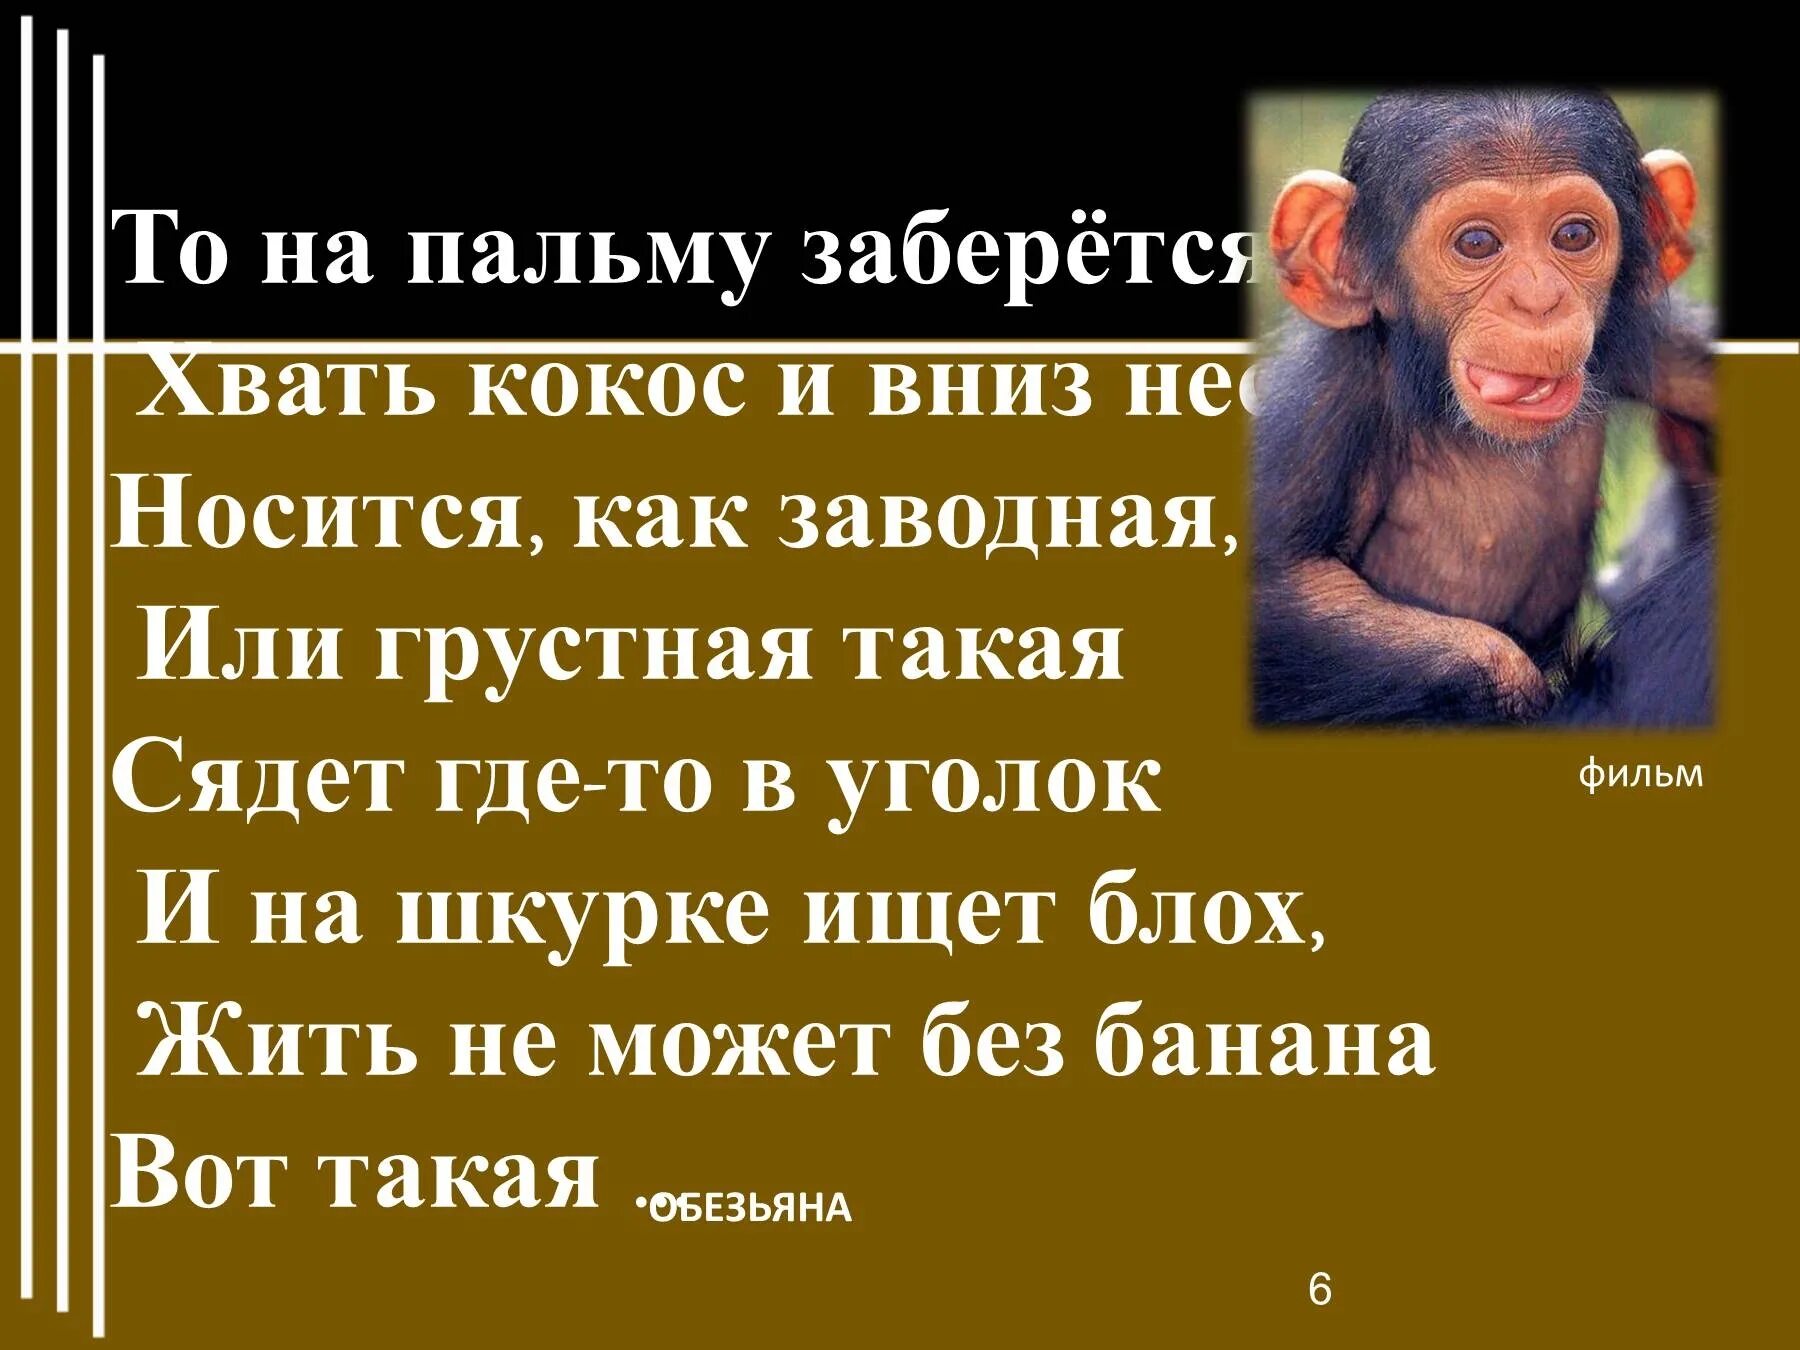 Про обезьянку 3 класс. Житков про обезьянку. Предложение про обезьяну. Рисунок к рассказу про обезьянку. Описание обезьянки из рассказа житкова про обезьянку